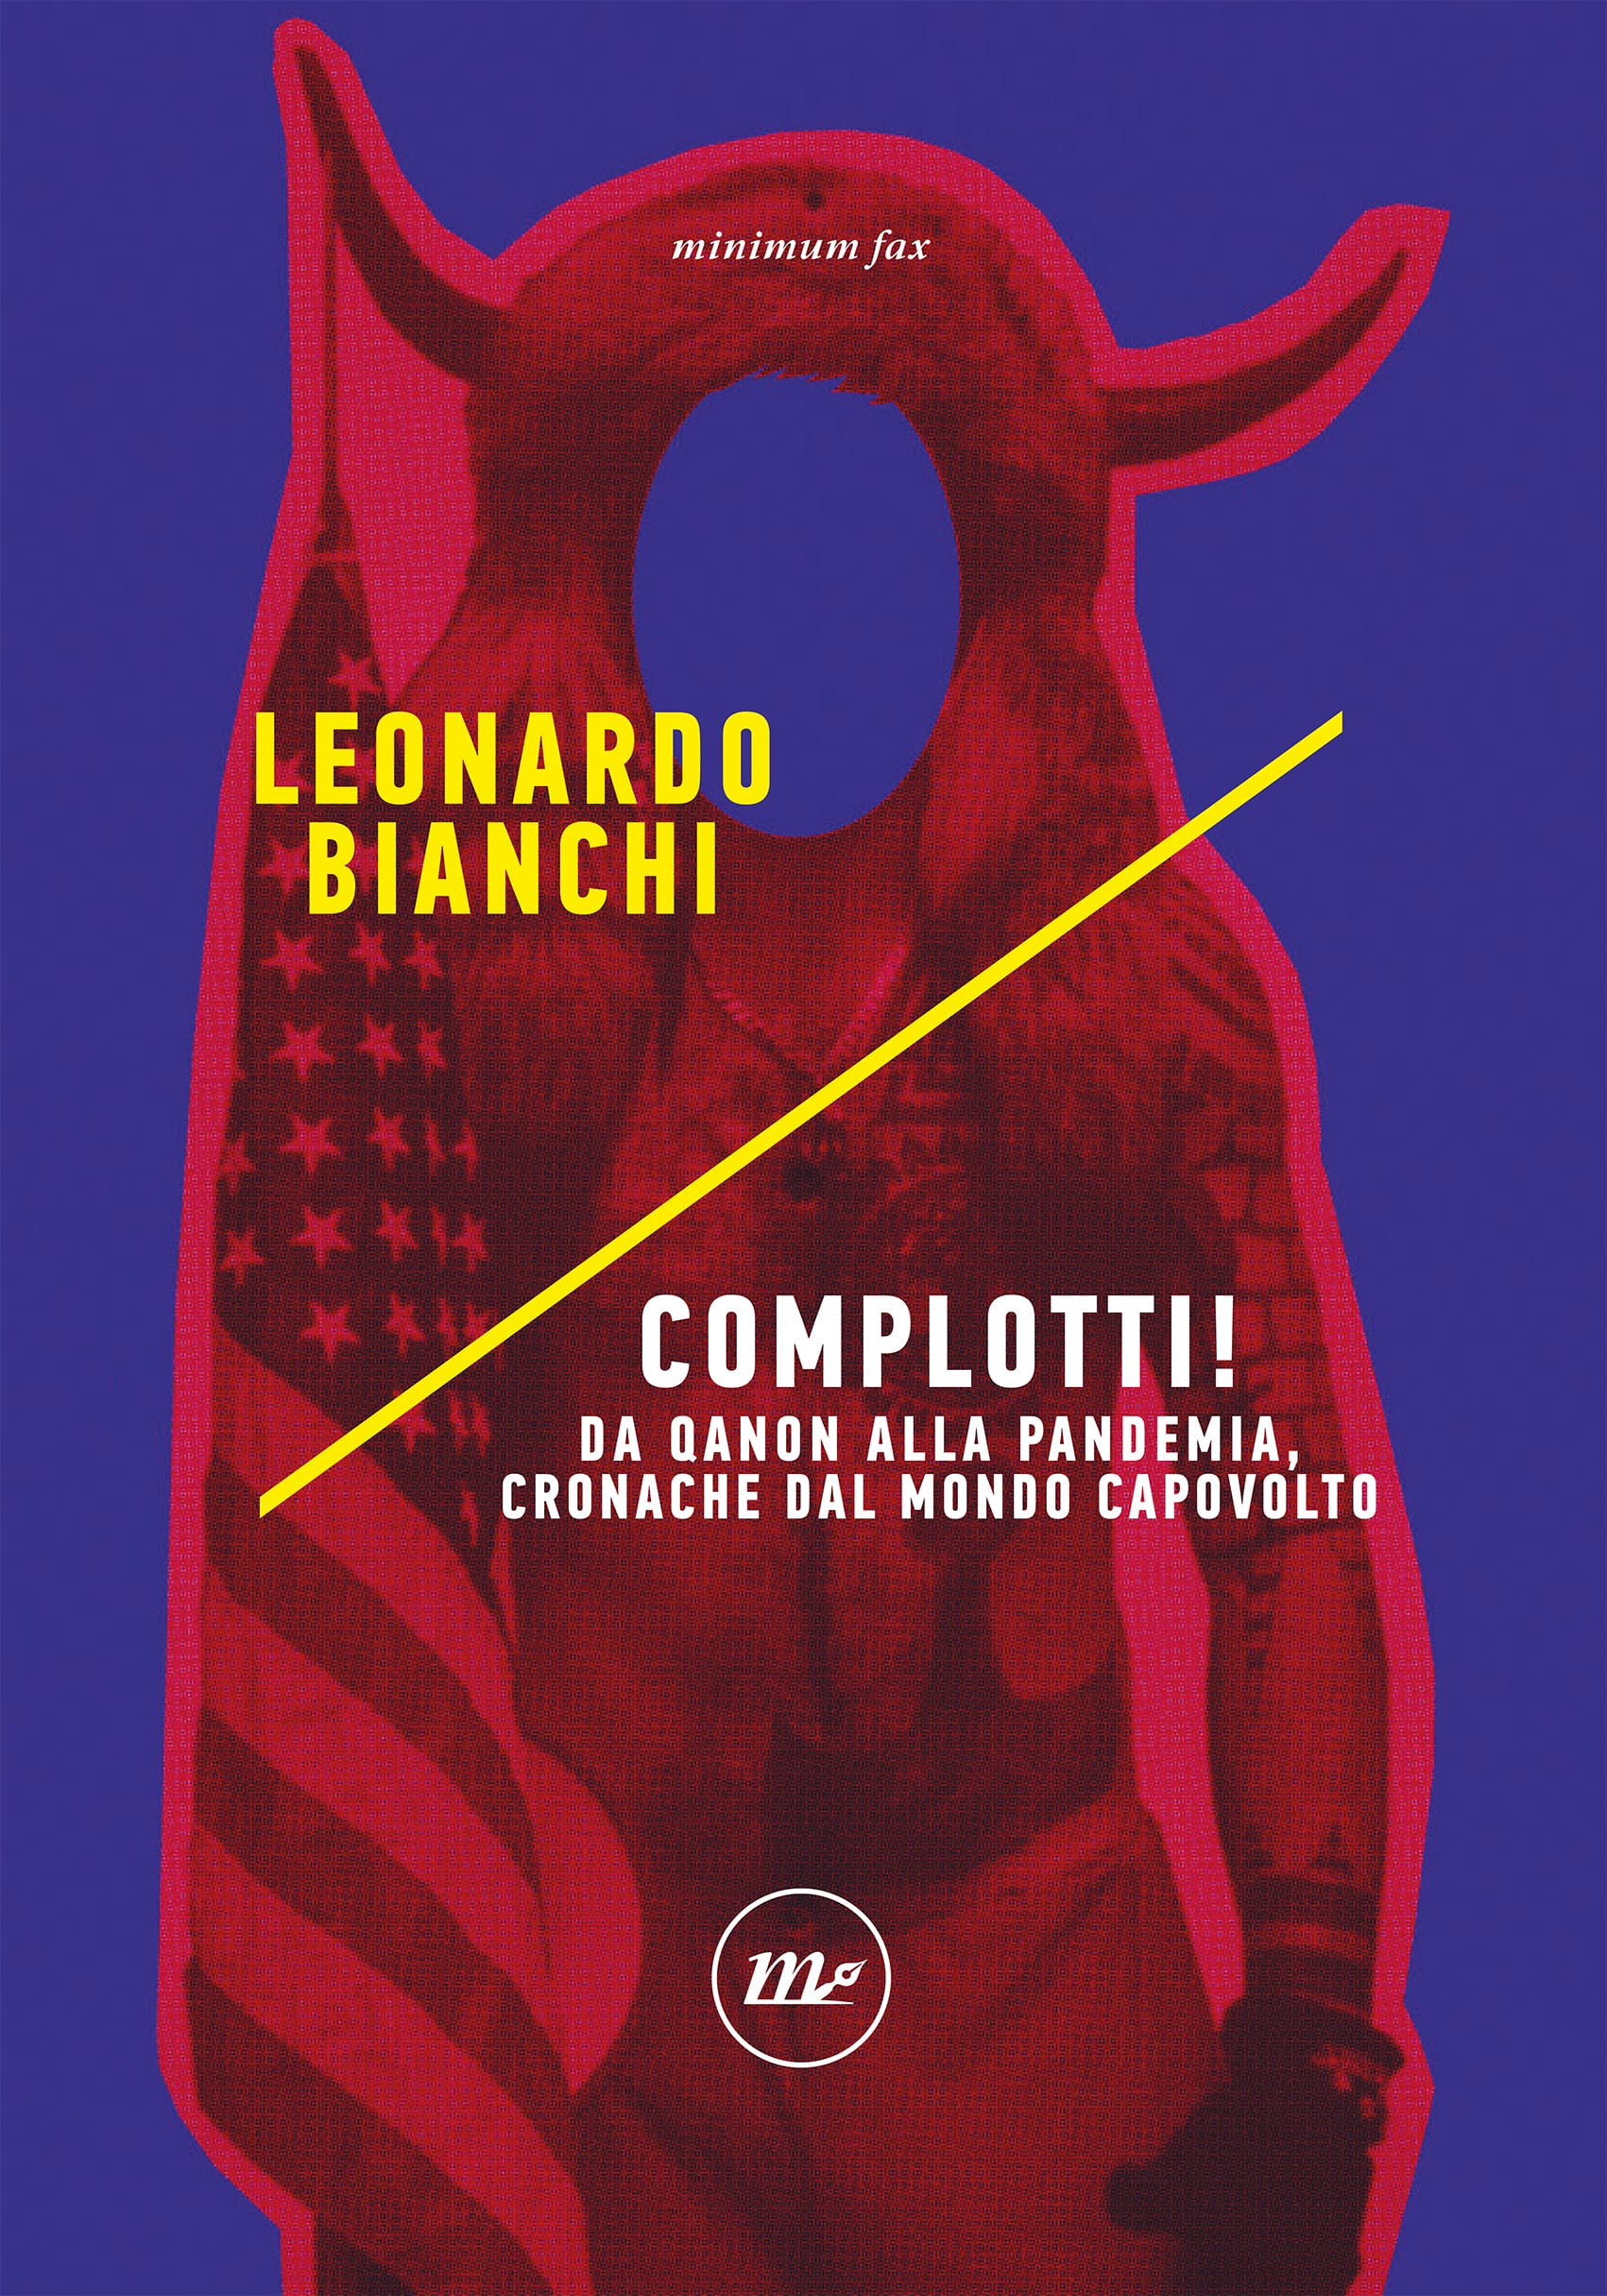 complotti_leonardo_bianchi_minimum fax_cover_libri del mese